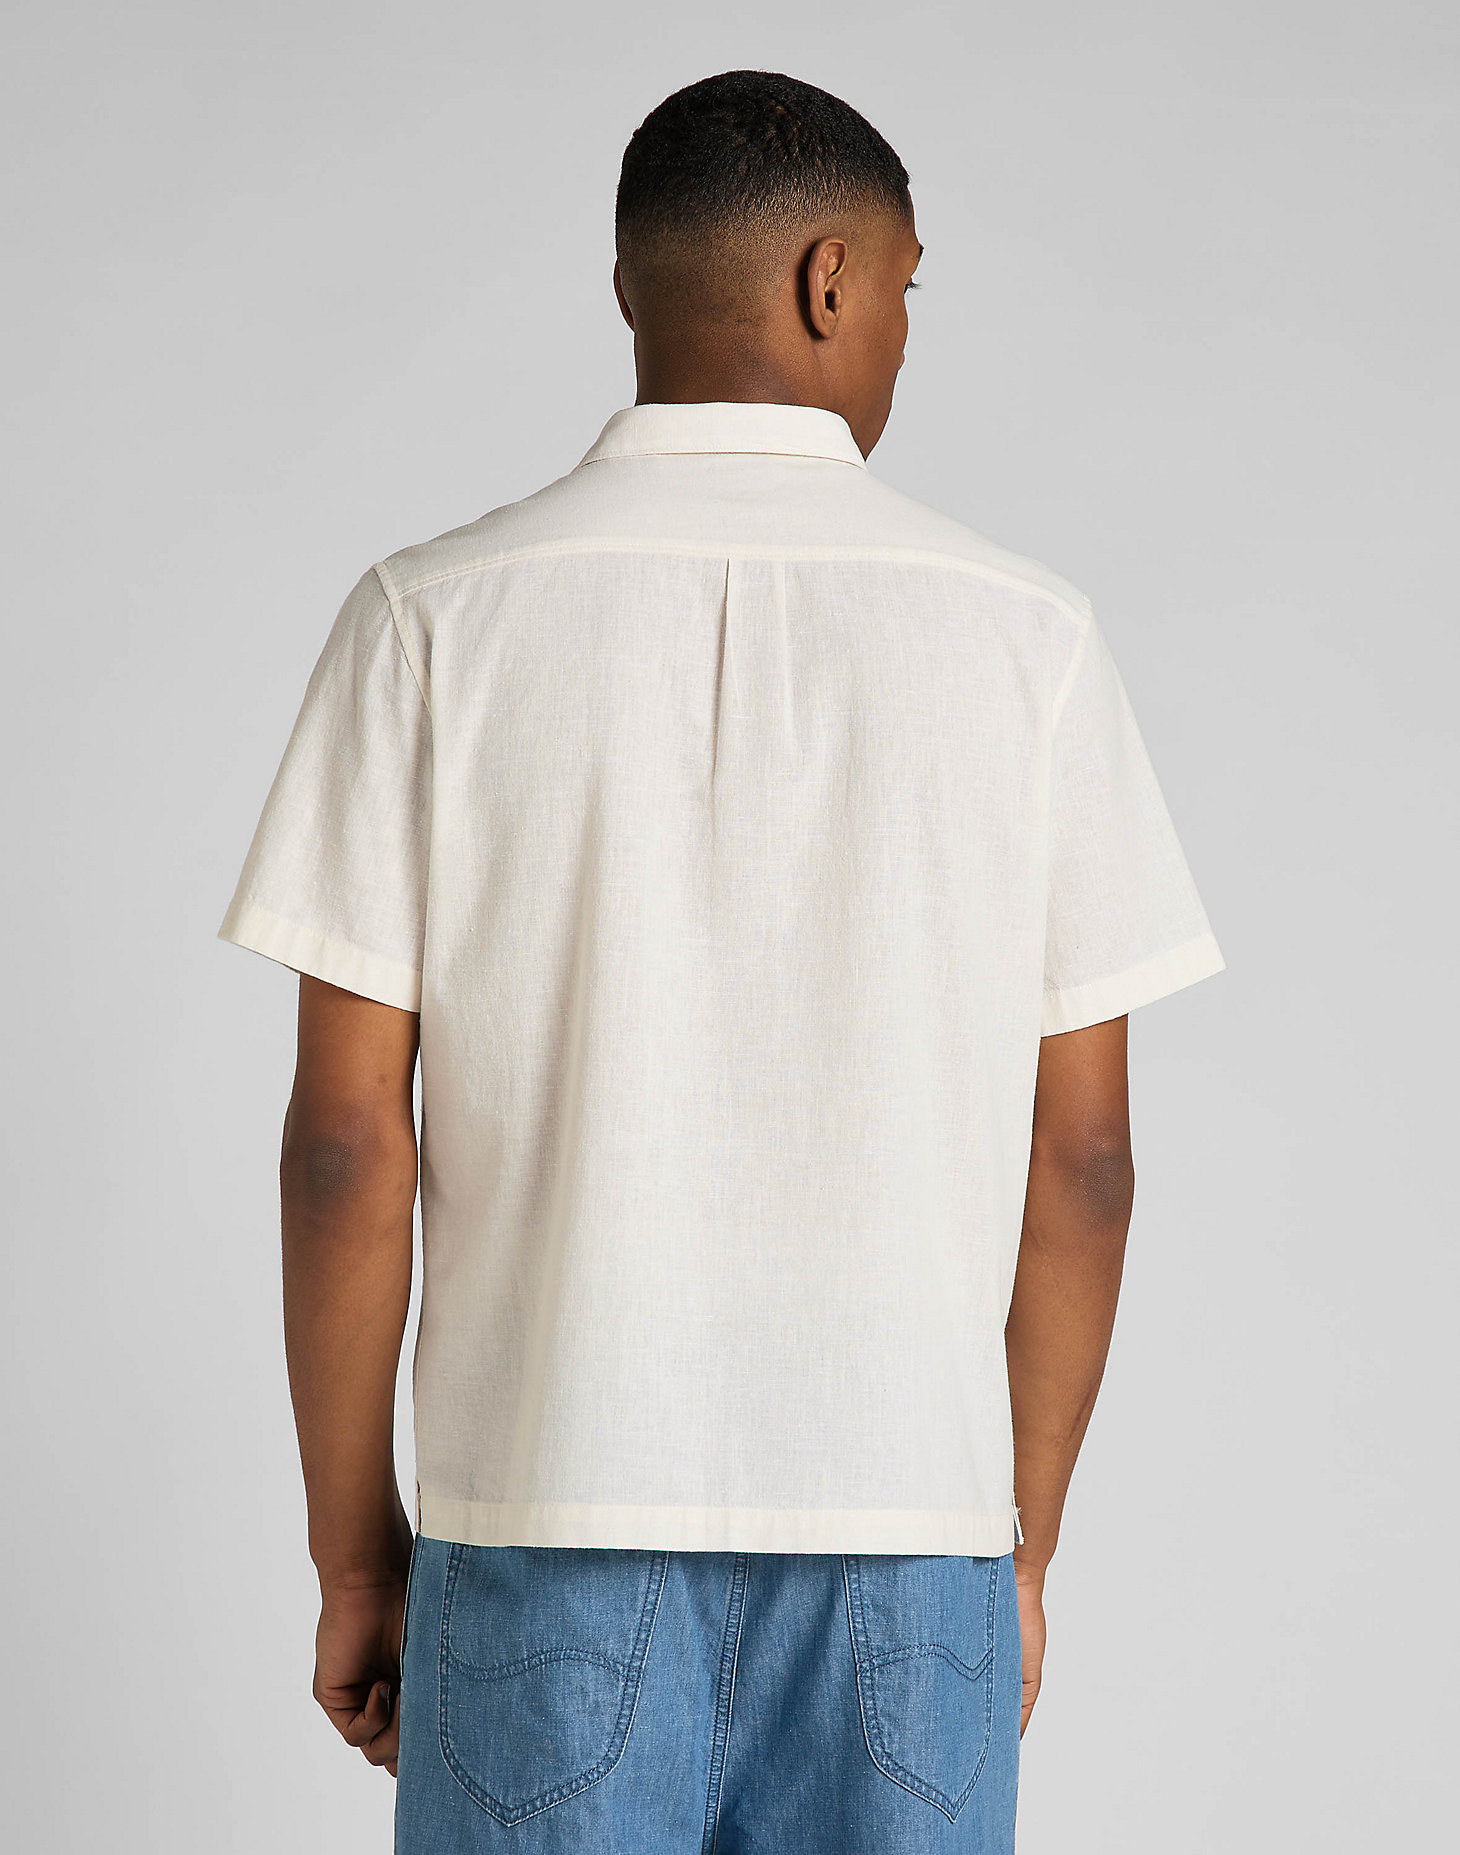 Short Sleeve Resort Shirt in Whitecap Gray alternative view 1